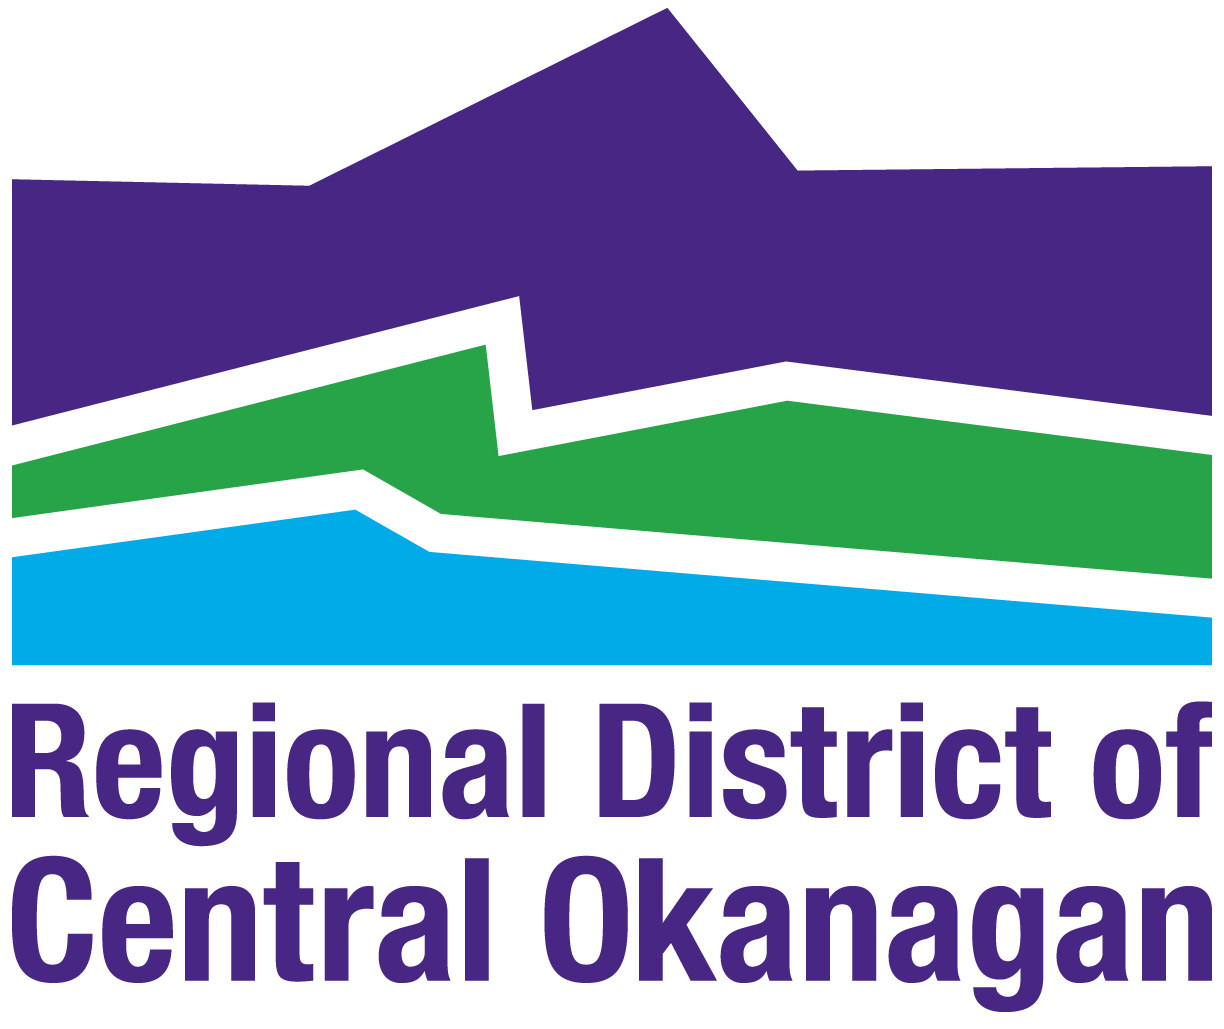 Central Okanagan